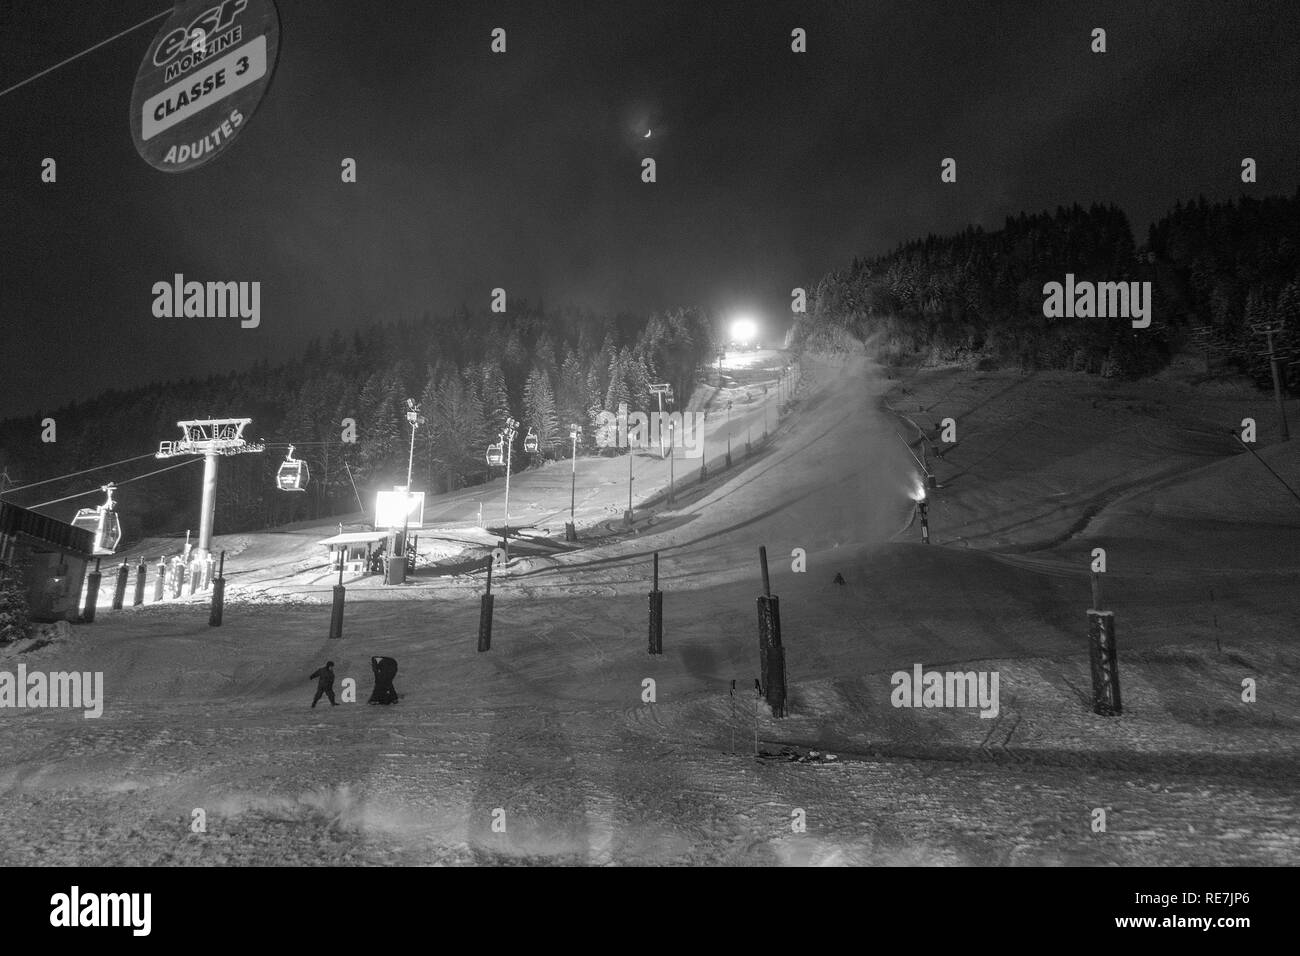 Le Pleney en gondole jusqu'aux pistes de ski de nuit avec de la neige dans la station de ski de Morzine Haute Savoie Portes du Soleil France Banque D'Images